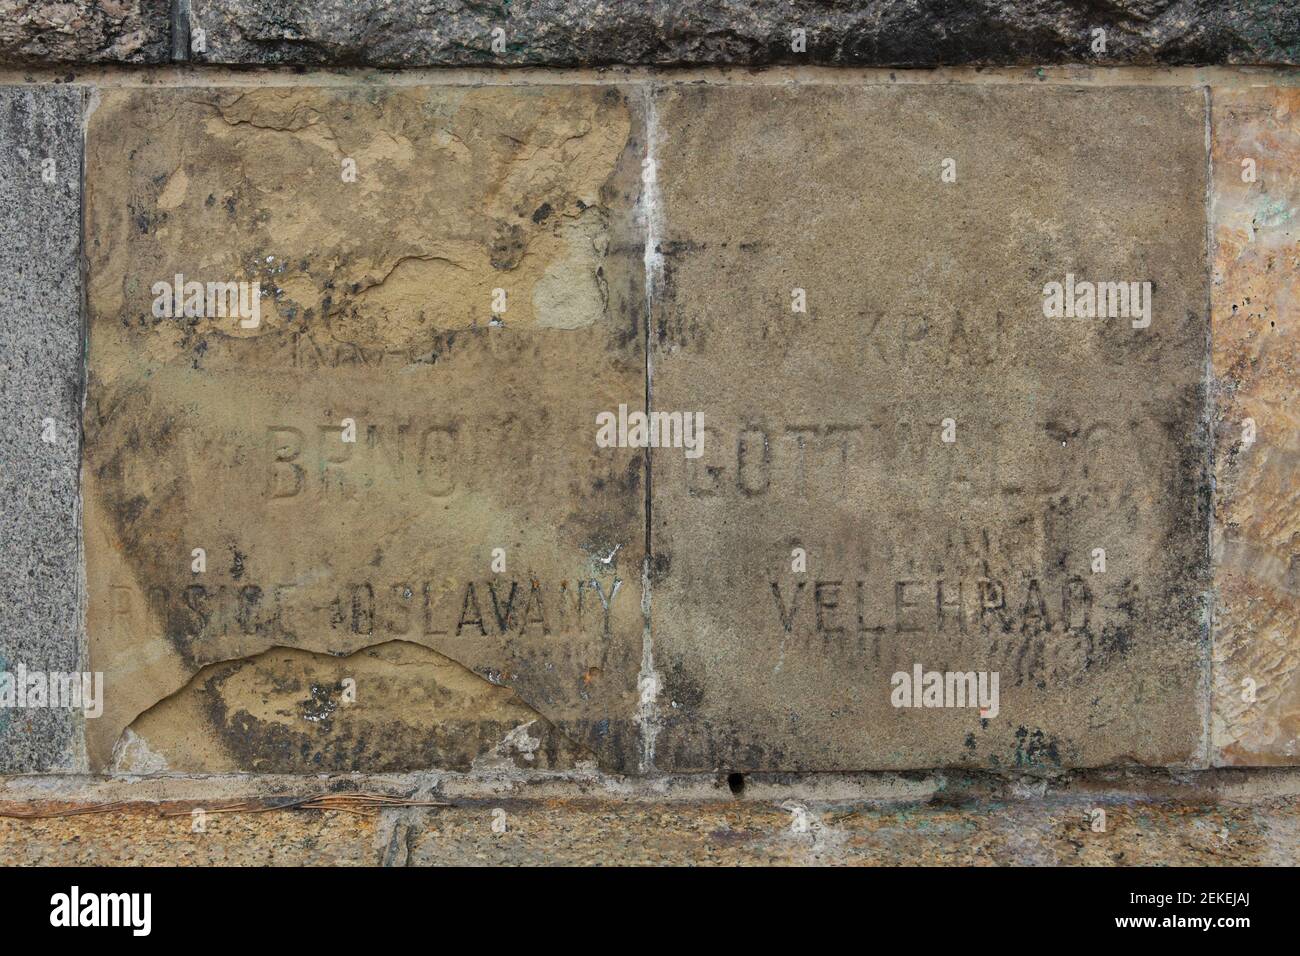 Les pierres de fondation restantes du monument du dictateur soviétique Joseph Staline dans le parc de Letná (Letenské sady) à Prague, République tchèque. La pierre de fondation du bassin de charbon de Rossice-Oslavany près de Brno, République Tchèque (L) et la pierre de fondation de Velehrad dans la région de Gottwaldov, aujourd'hui région de Zlín, République Tchèque (R) sont représentées sur la photo. Banque D'Images